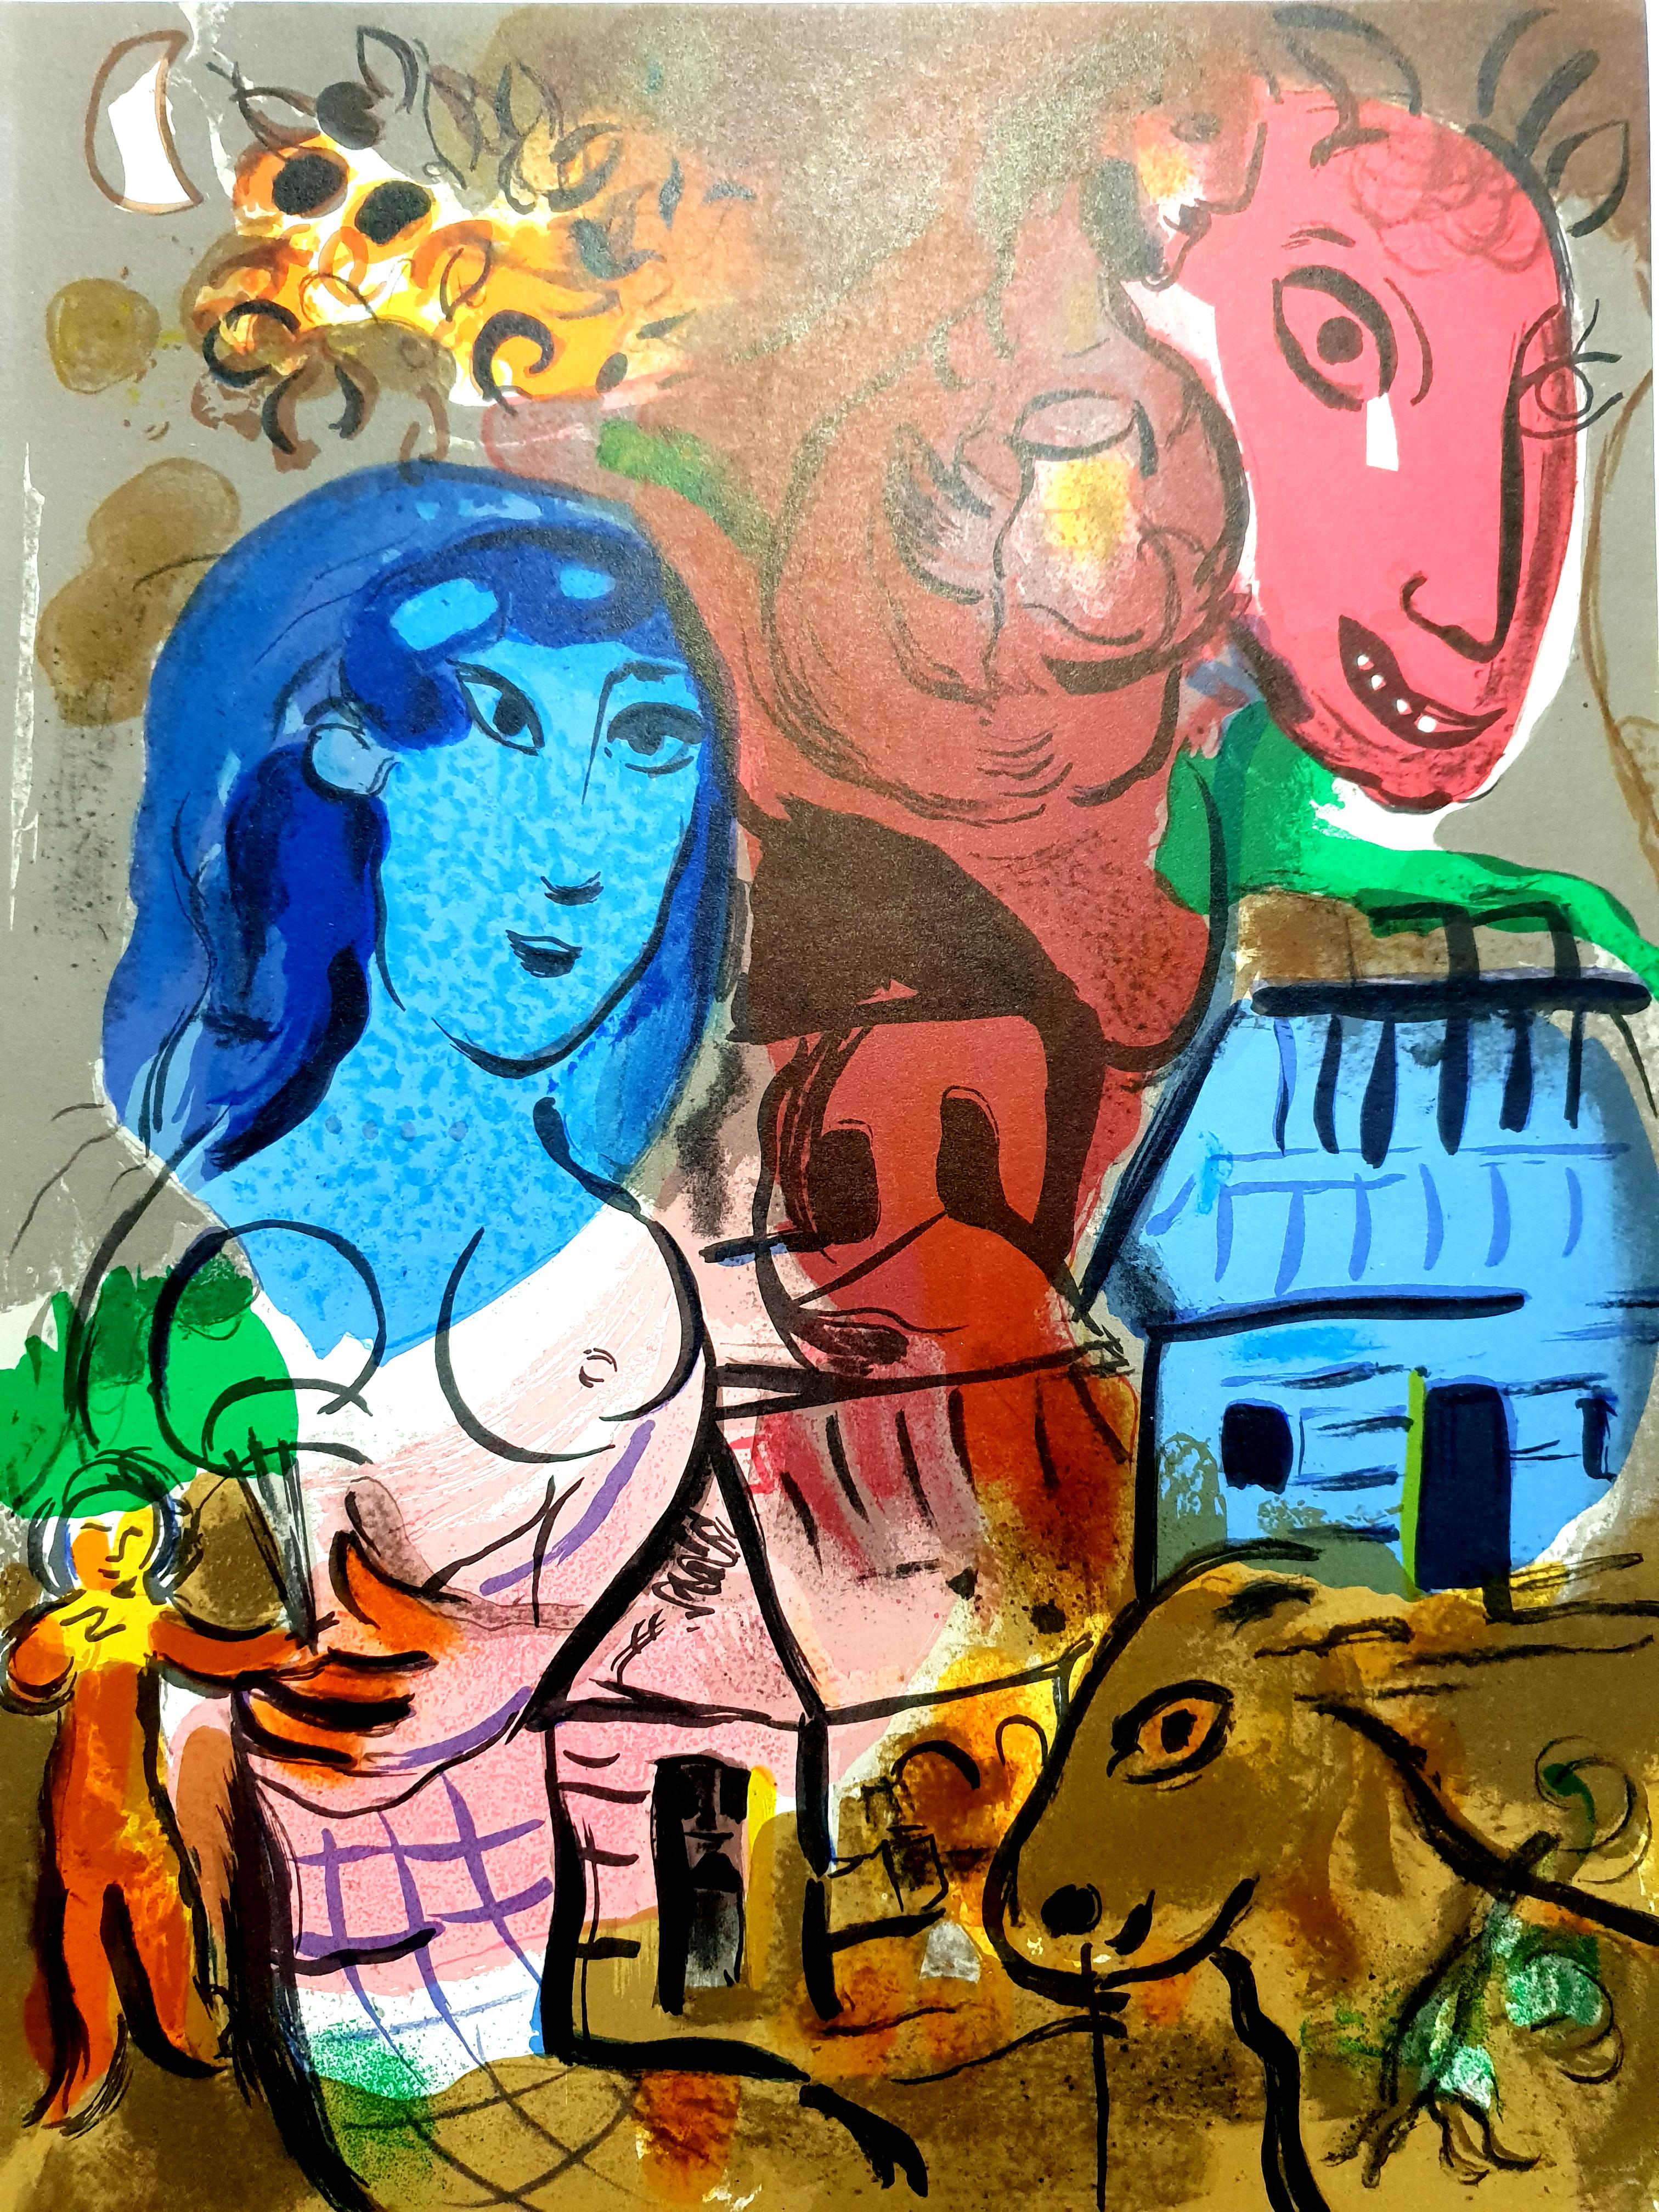 Marc Chagall
Original-Lithographie
1969
Aus der Zeitschrift XXe Siecle, Auflage: 12.000 Stück
Unsigniert, wie ausgestellt
Abmessungen: 32 x 24
Zustand: Ausgezeichnet
Referenz: Mourlot 572

Marc Chagall  (geboren 1887)

Marc Chagall wurde 1887 in